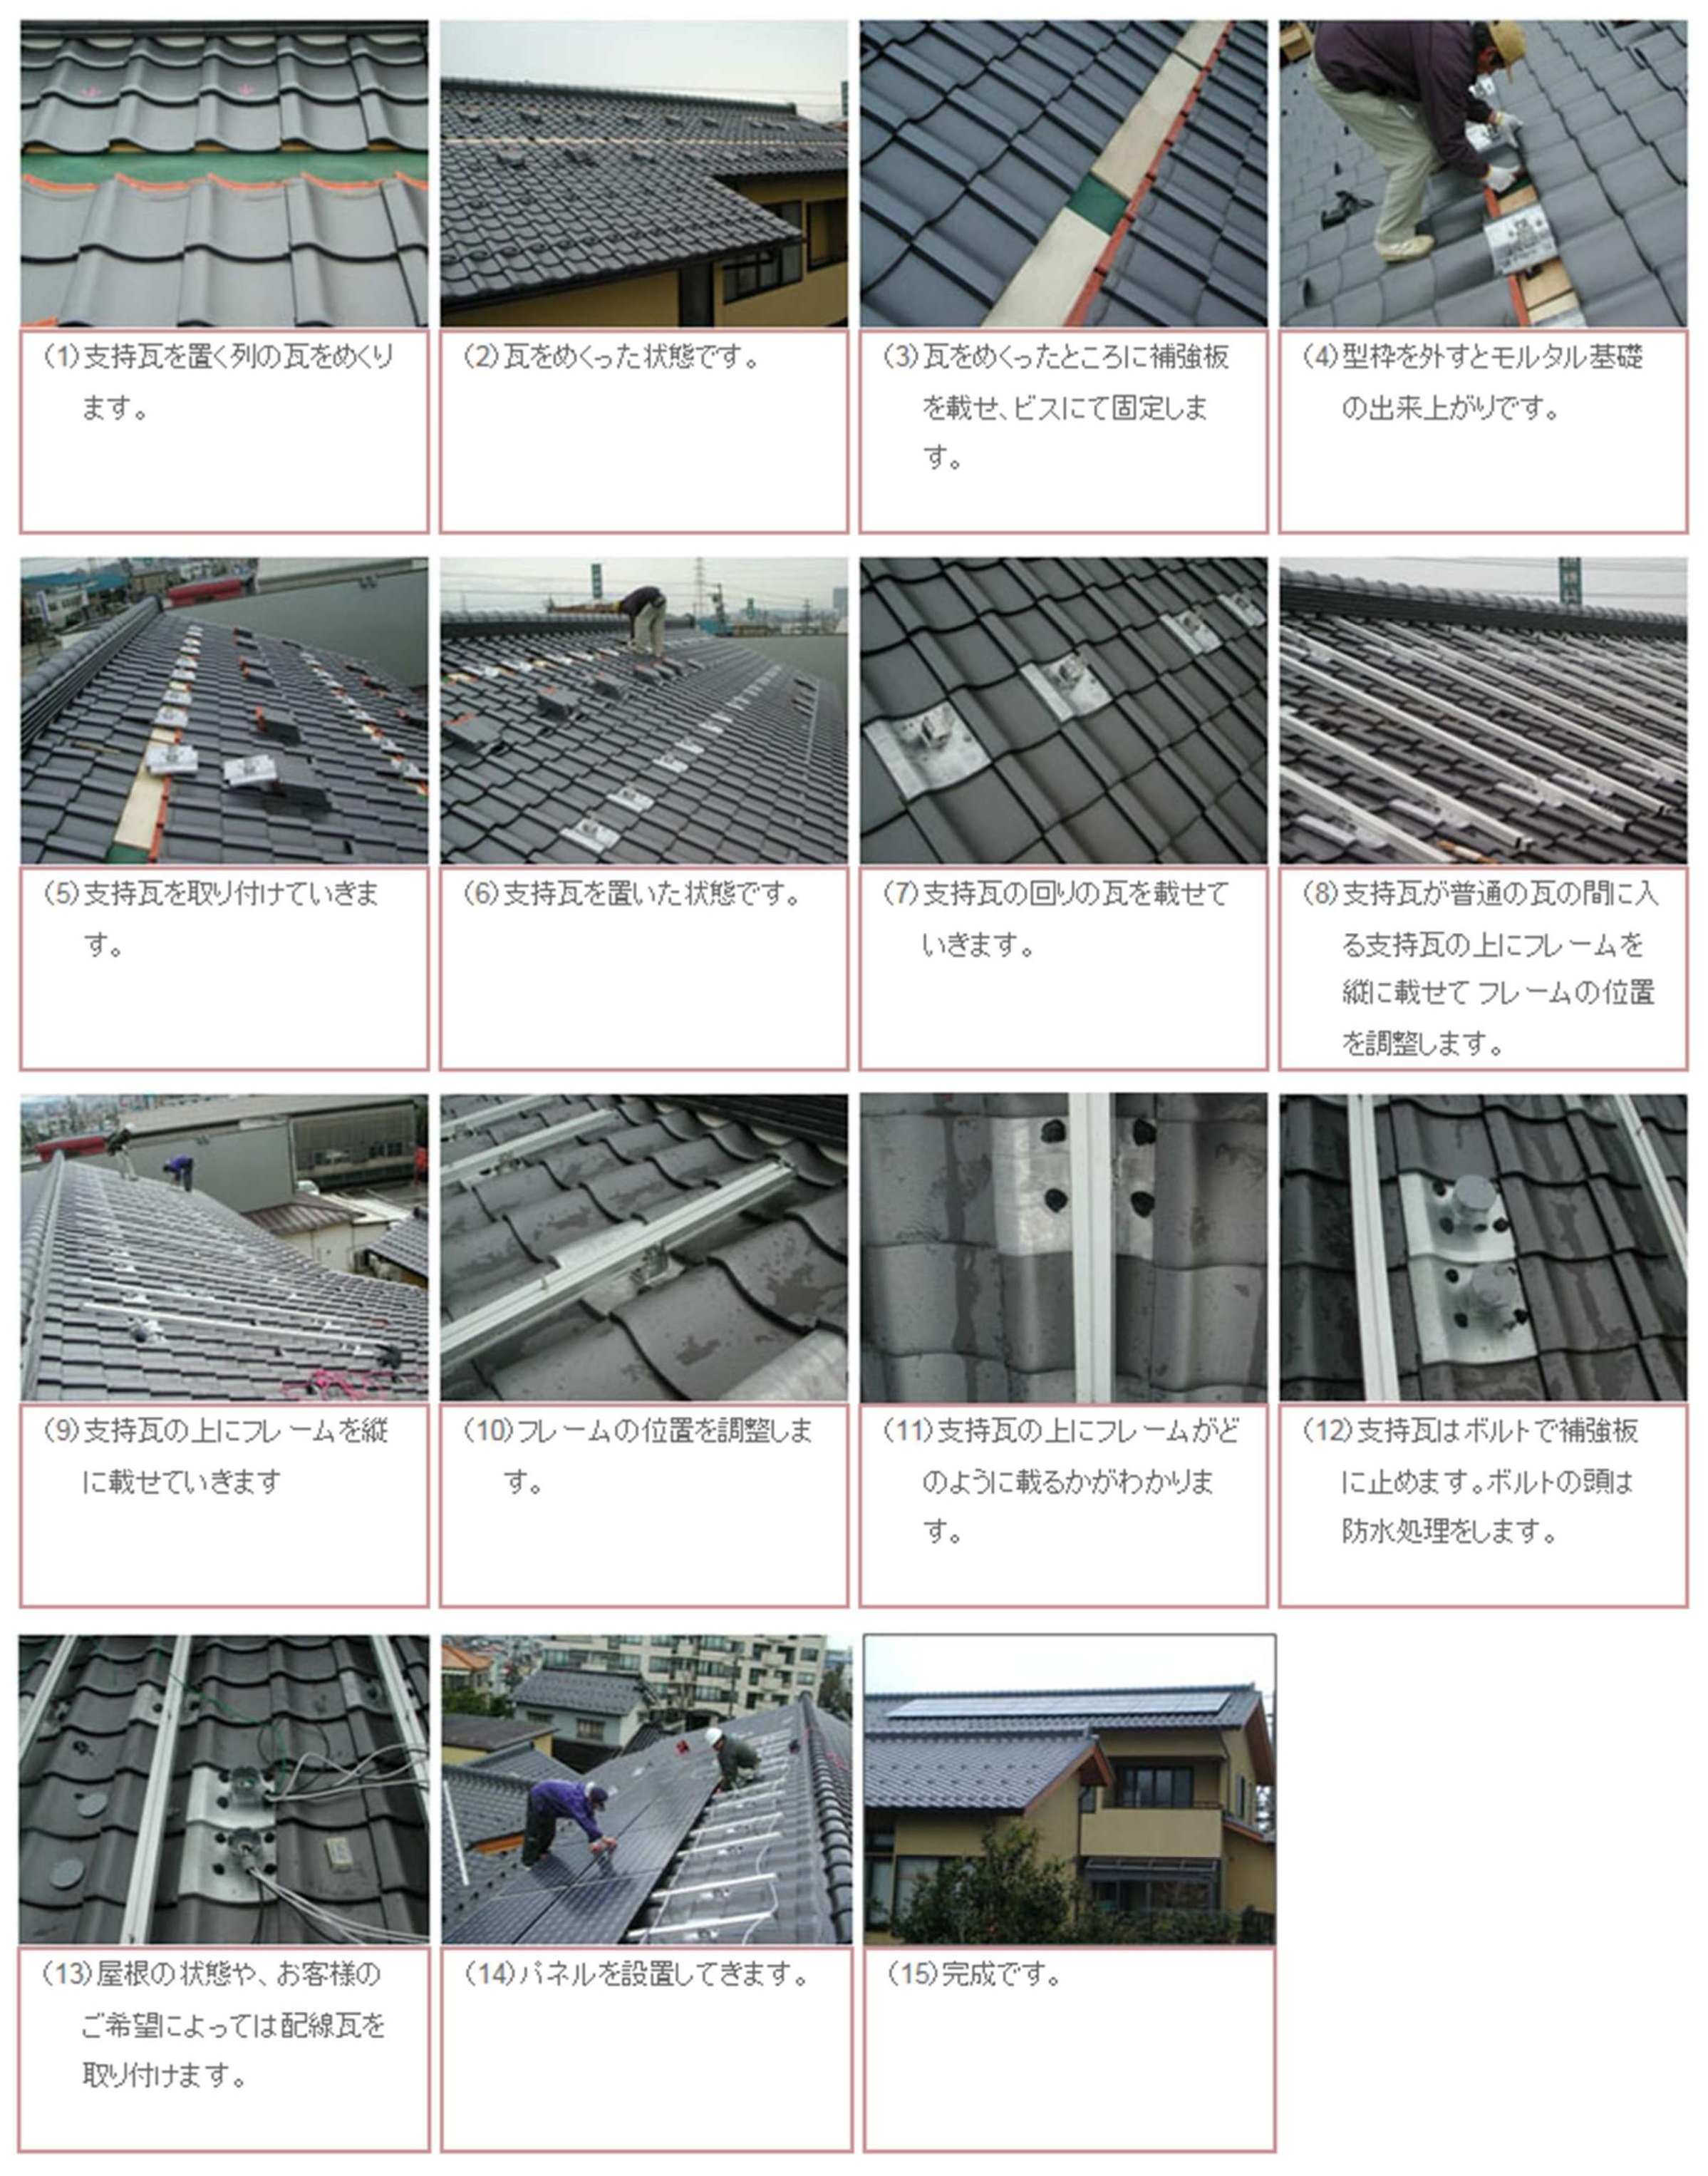 和瓦屋根の場合の太陽光発電システムの施工方法